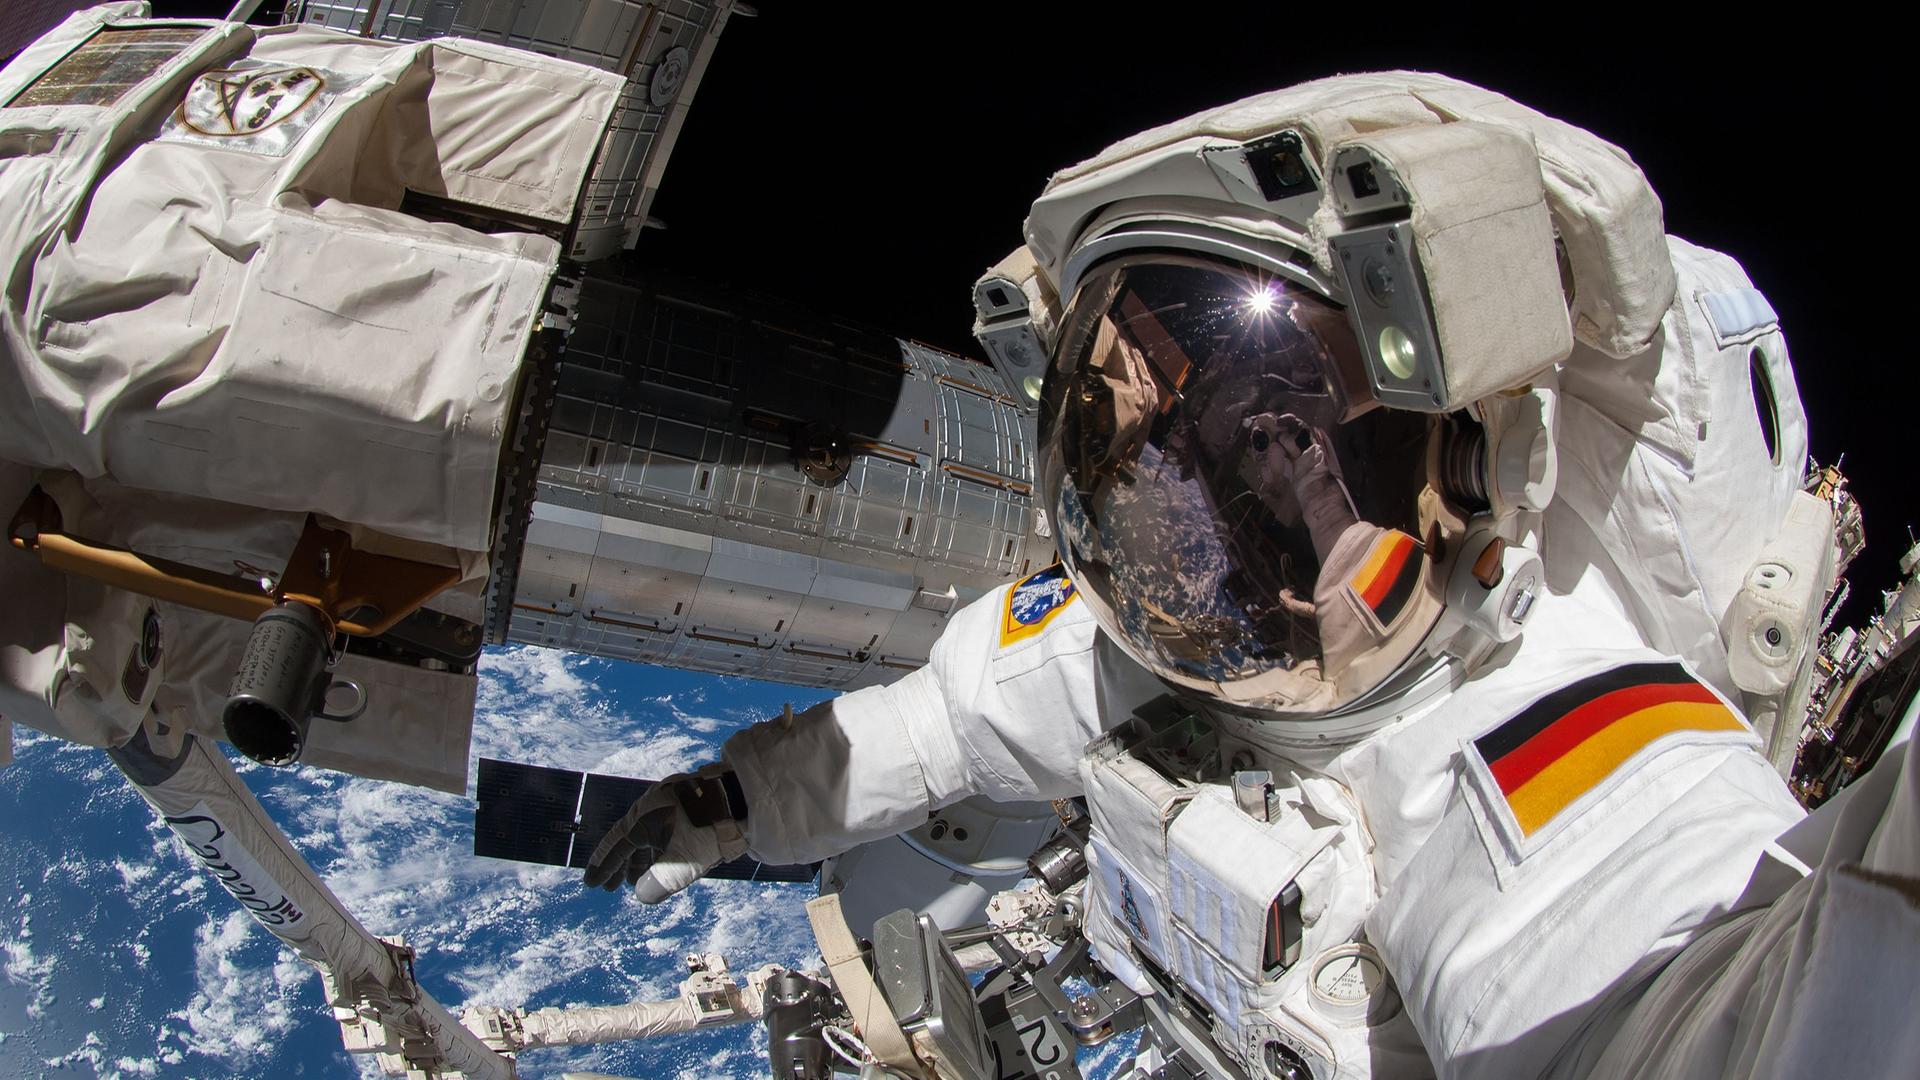 Ein Astronaut mit deutschem Hoheitsabzeichen auf seinem Raumanzug arbeitet außerhalb der ISS im Weltraum. 